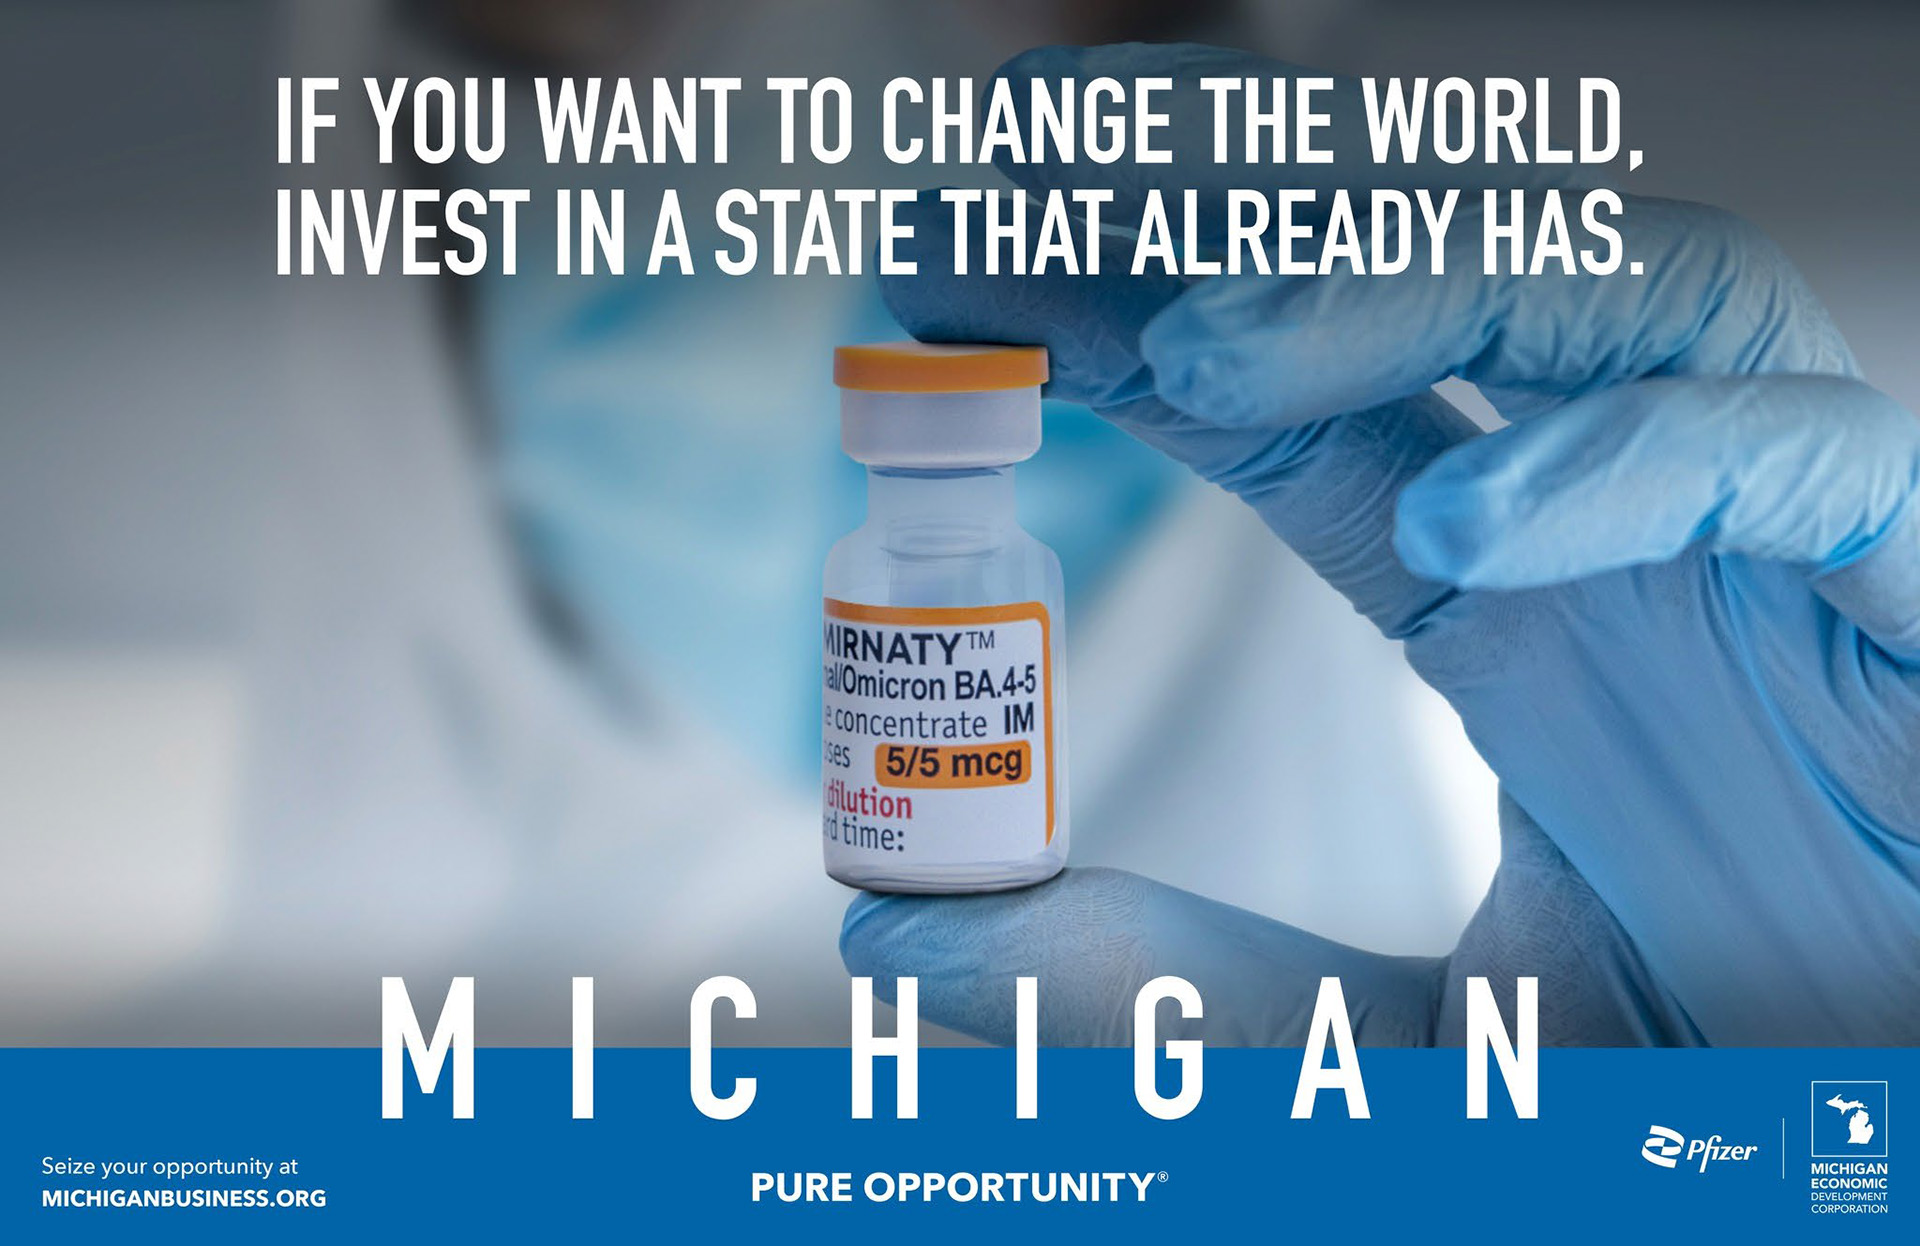 Michigan - Pure Opportunity ad campaign for Michigan Economic Development Corporation